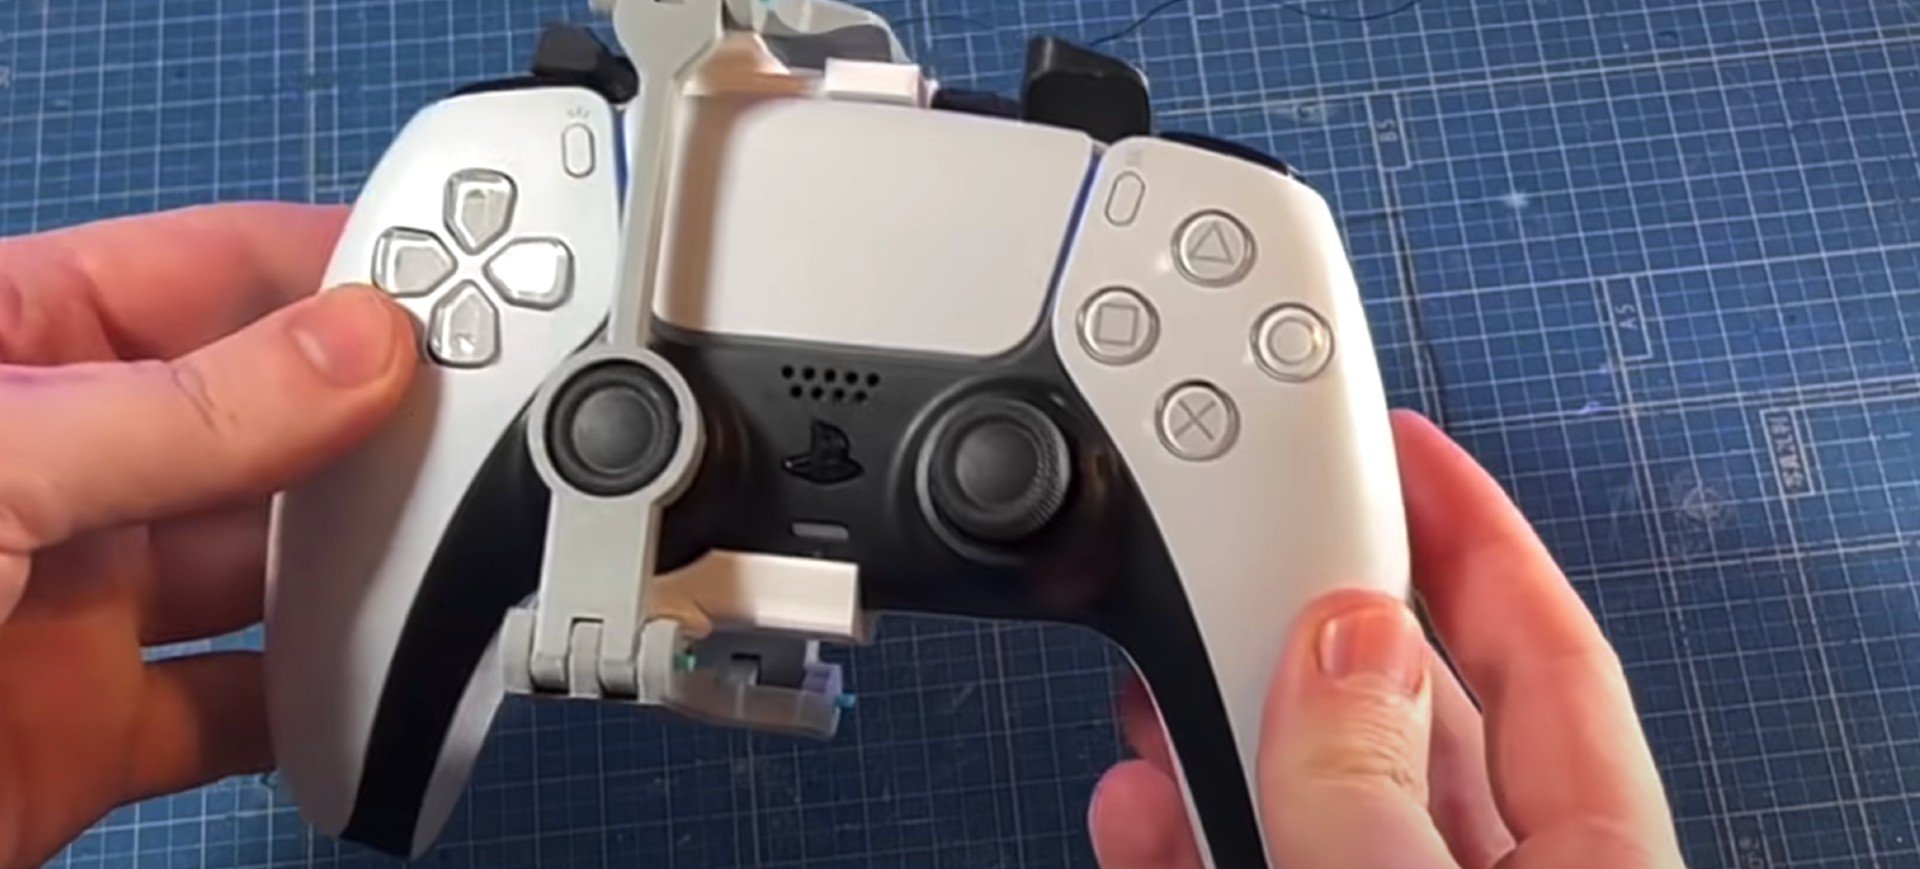 Mãos seguram controle DualSense do PS5 equipado com adaptador feito em impressora 3D